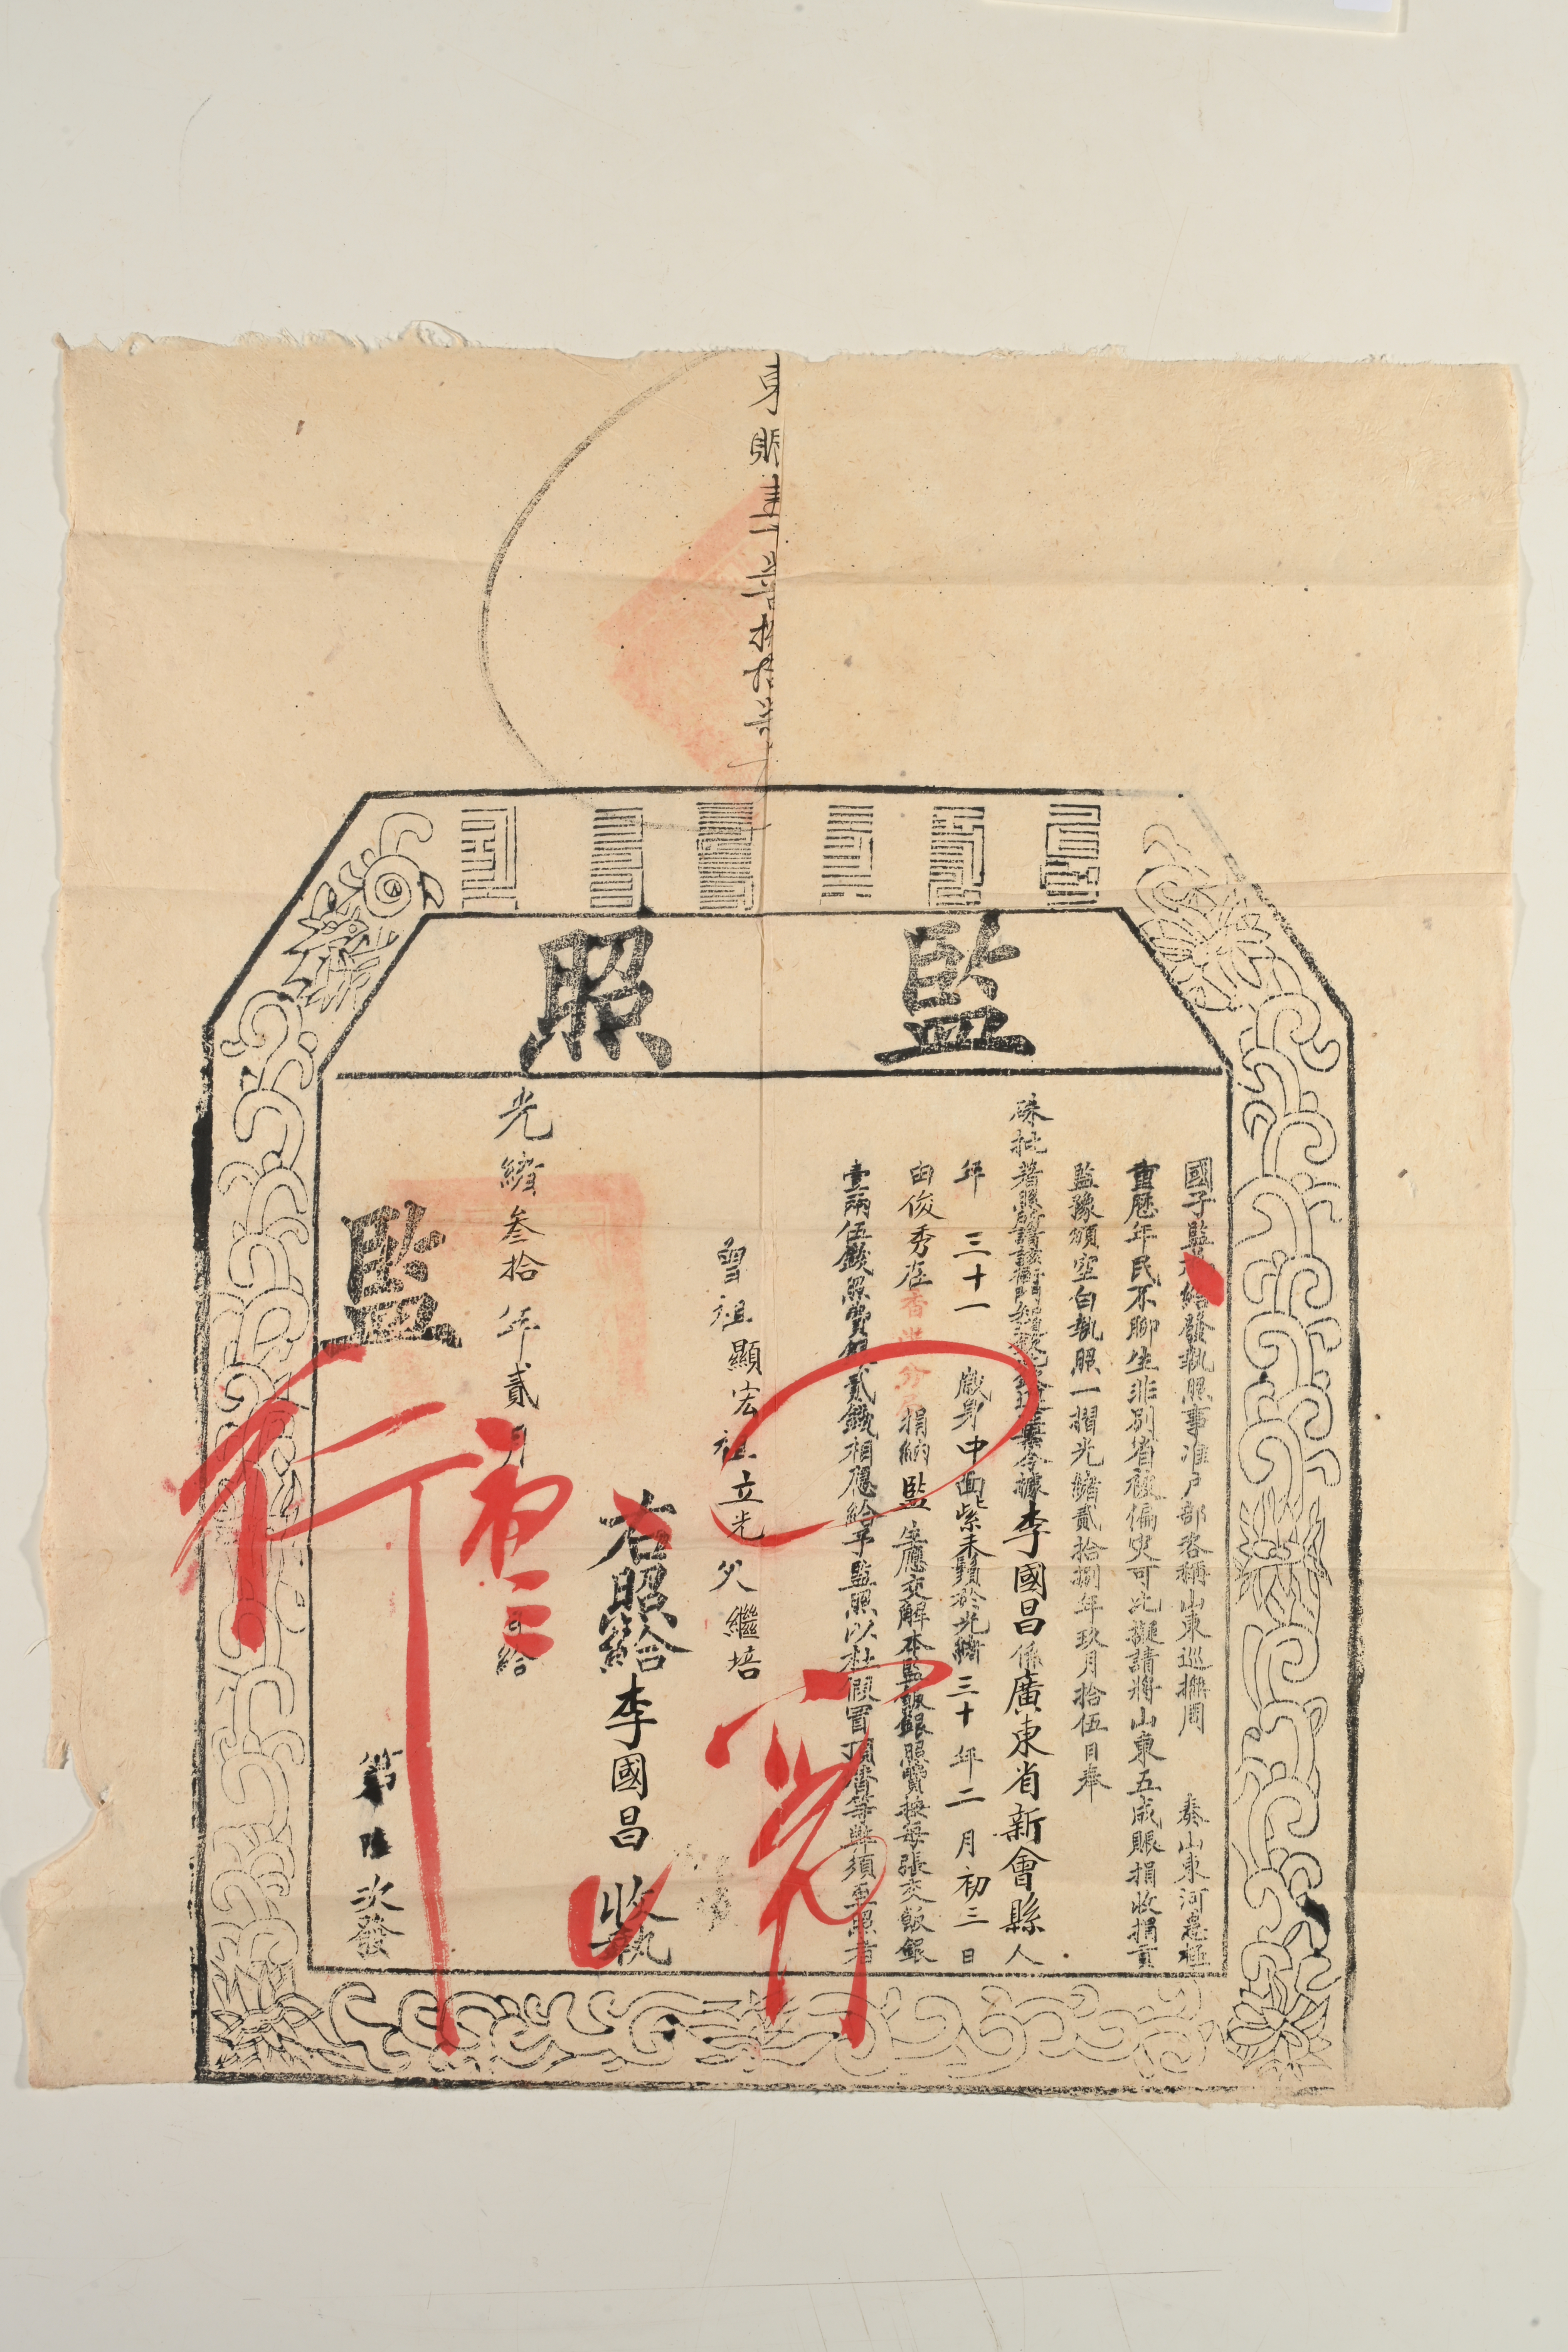 光绪30年(1904年)国子监发出之监照，是通向仕途的入场券。香港历史博物馆藏